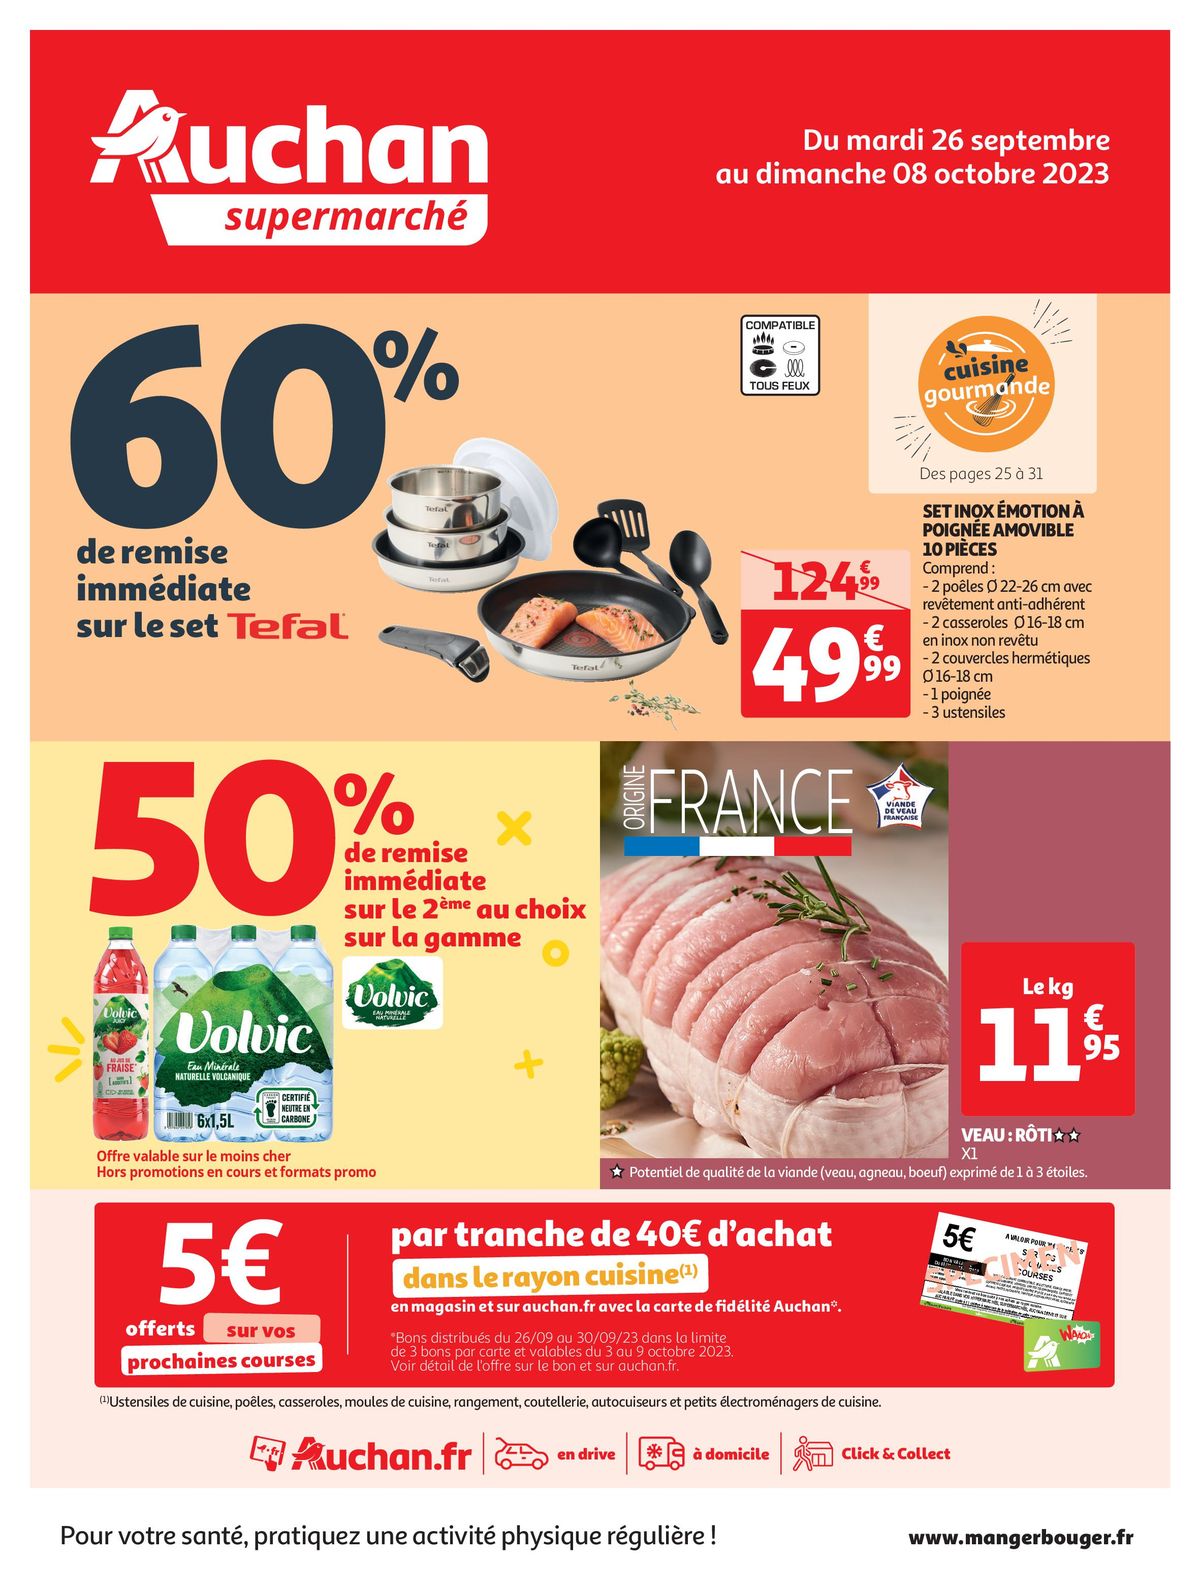 Catalogue Spécial Cuisine Gourmane dans votre supermarché, page 00001